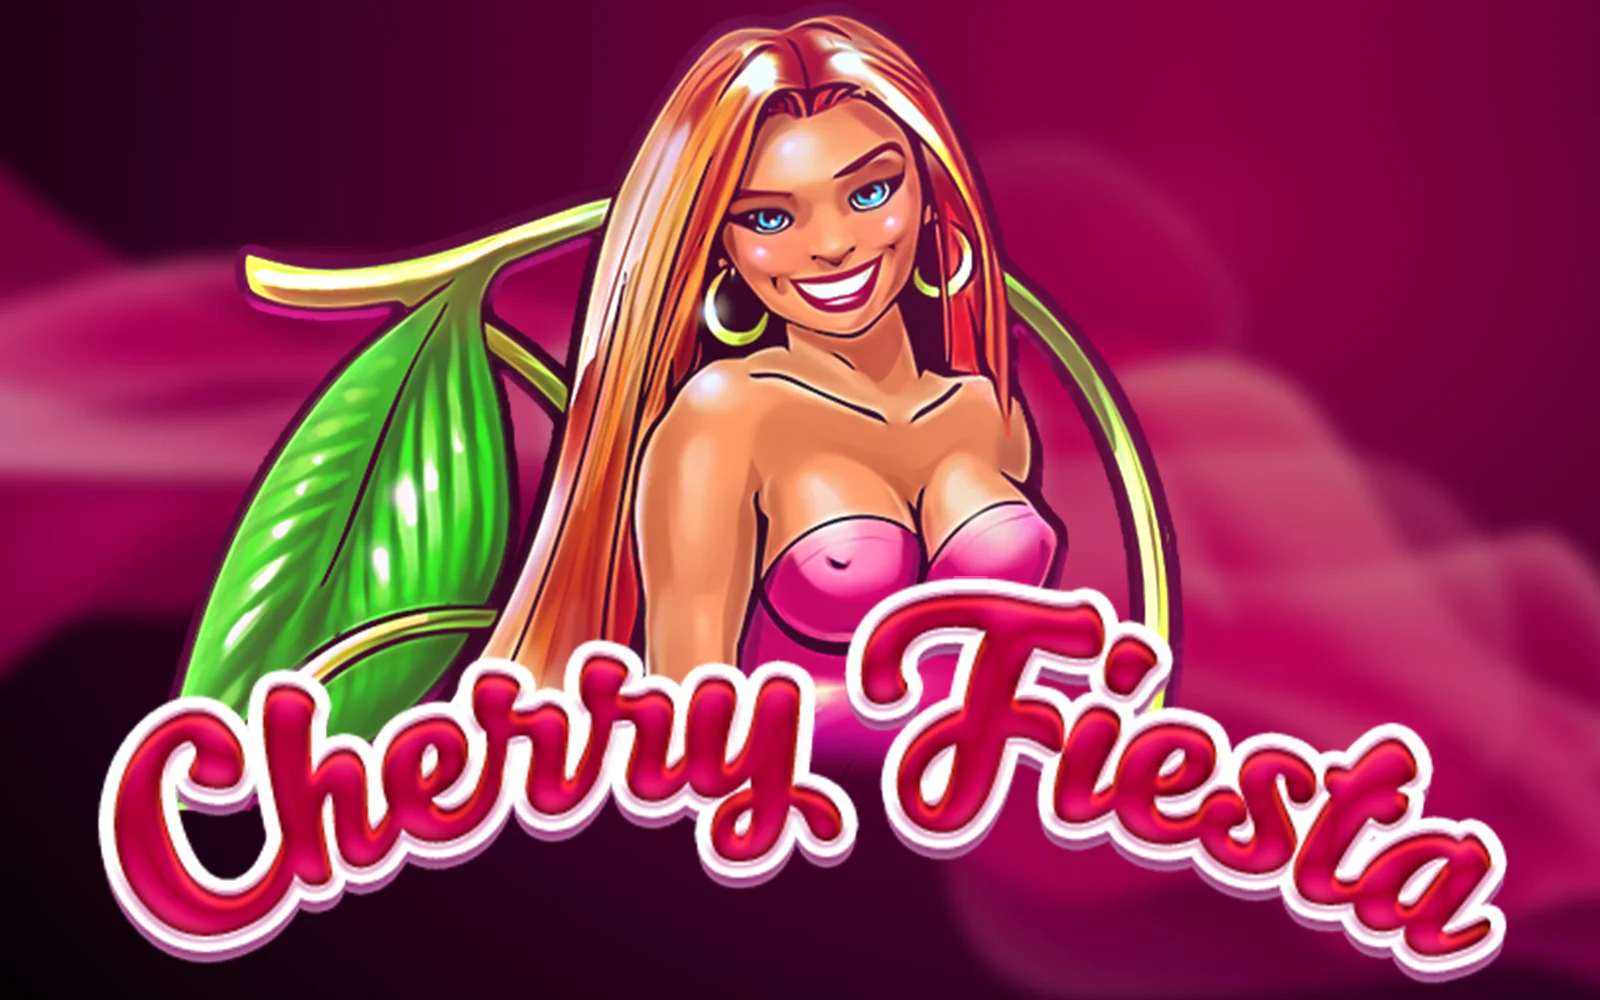 Play Cherry Fiesta on Starcasino.be online casino